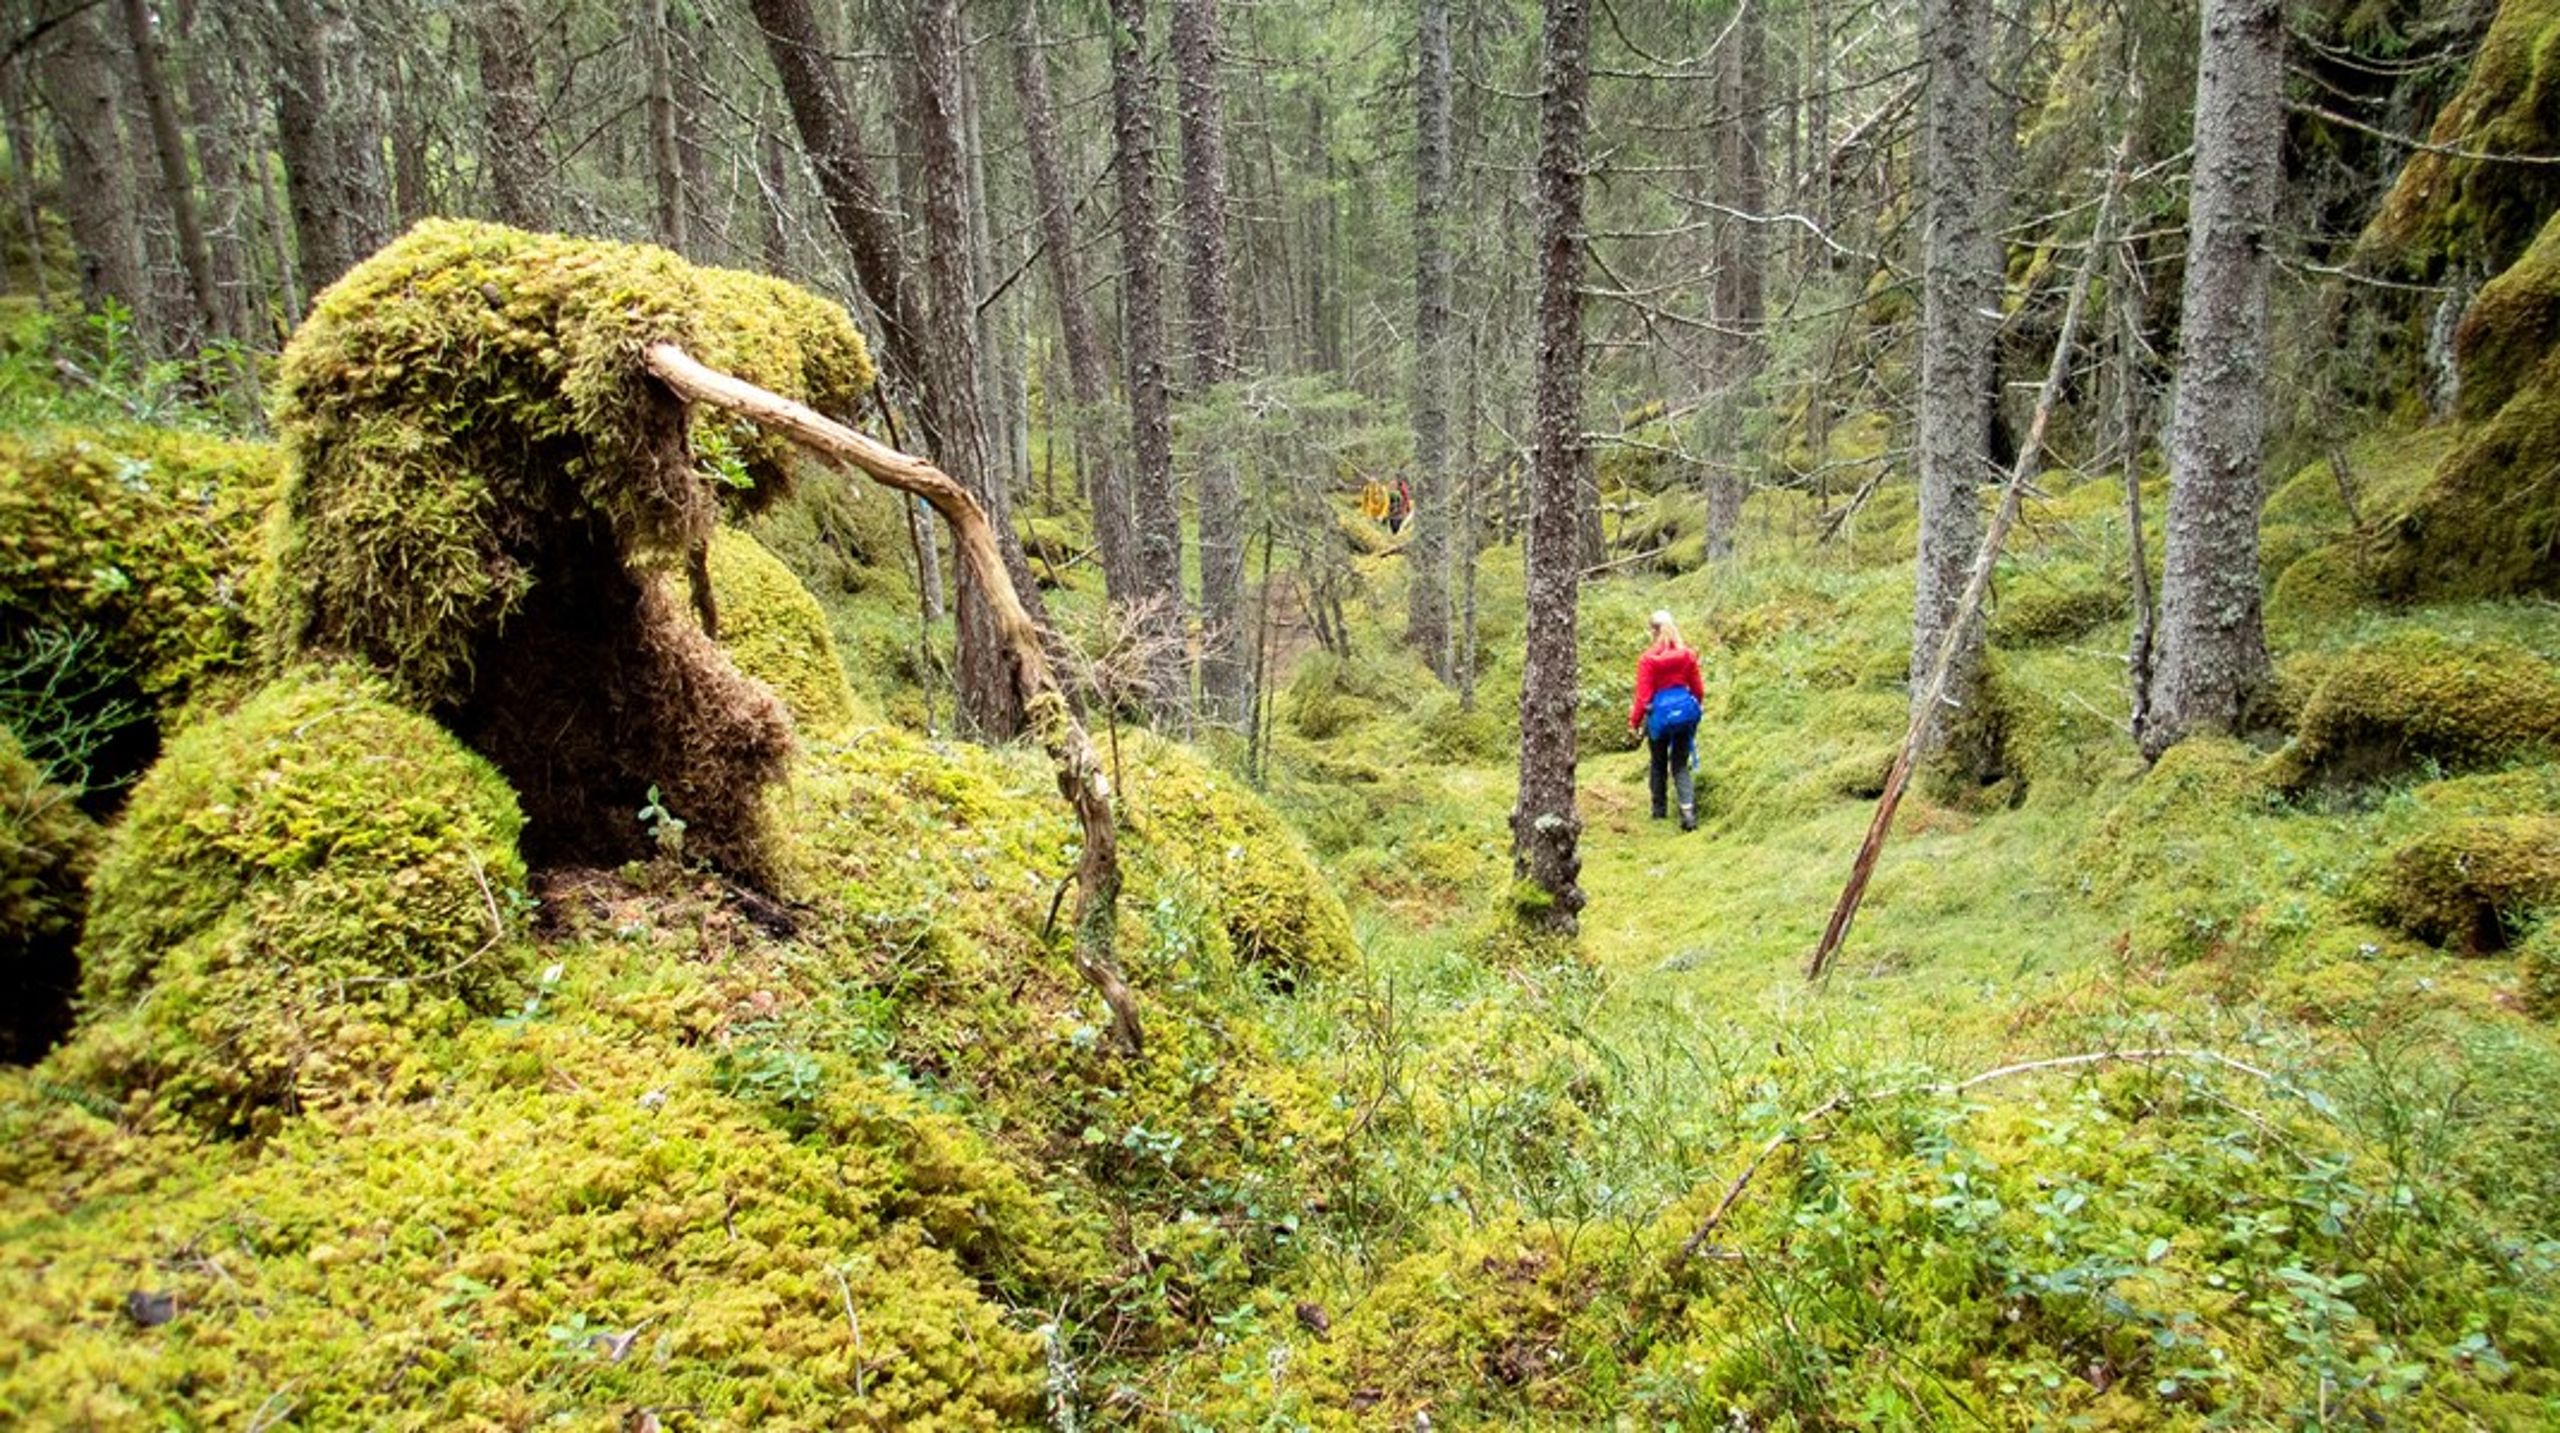 Stortinget har vedtatt at ti&nbsp;prosent av skogen i Norge skal vernes. Så langt er målet halvveis nådd: 5,2 prosent er vernet.